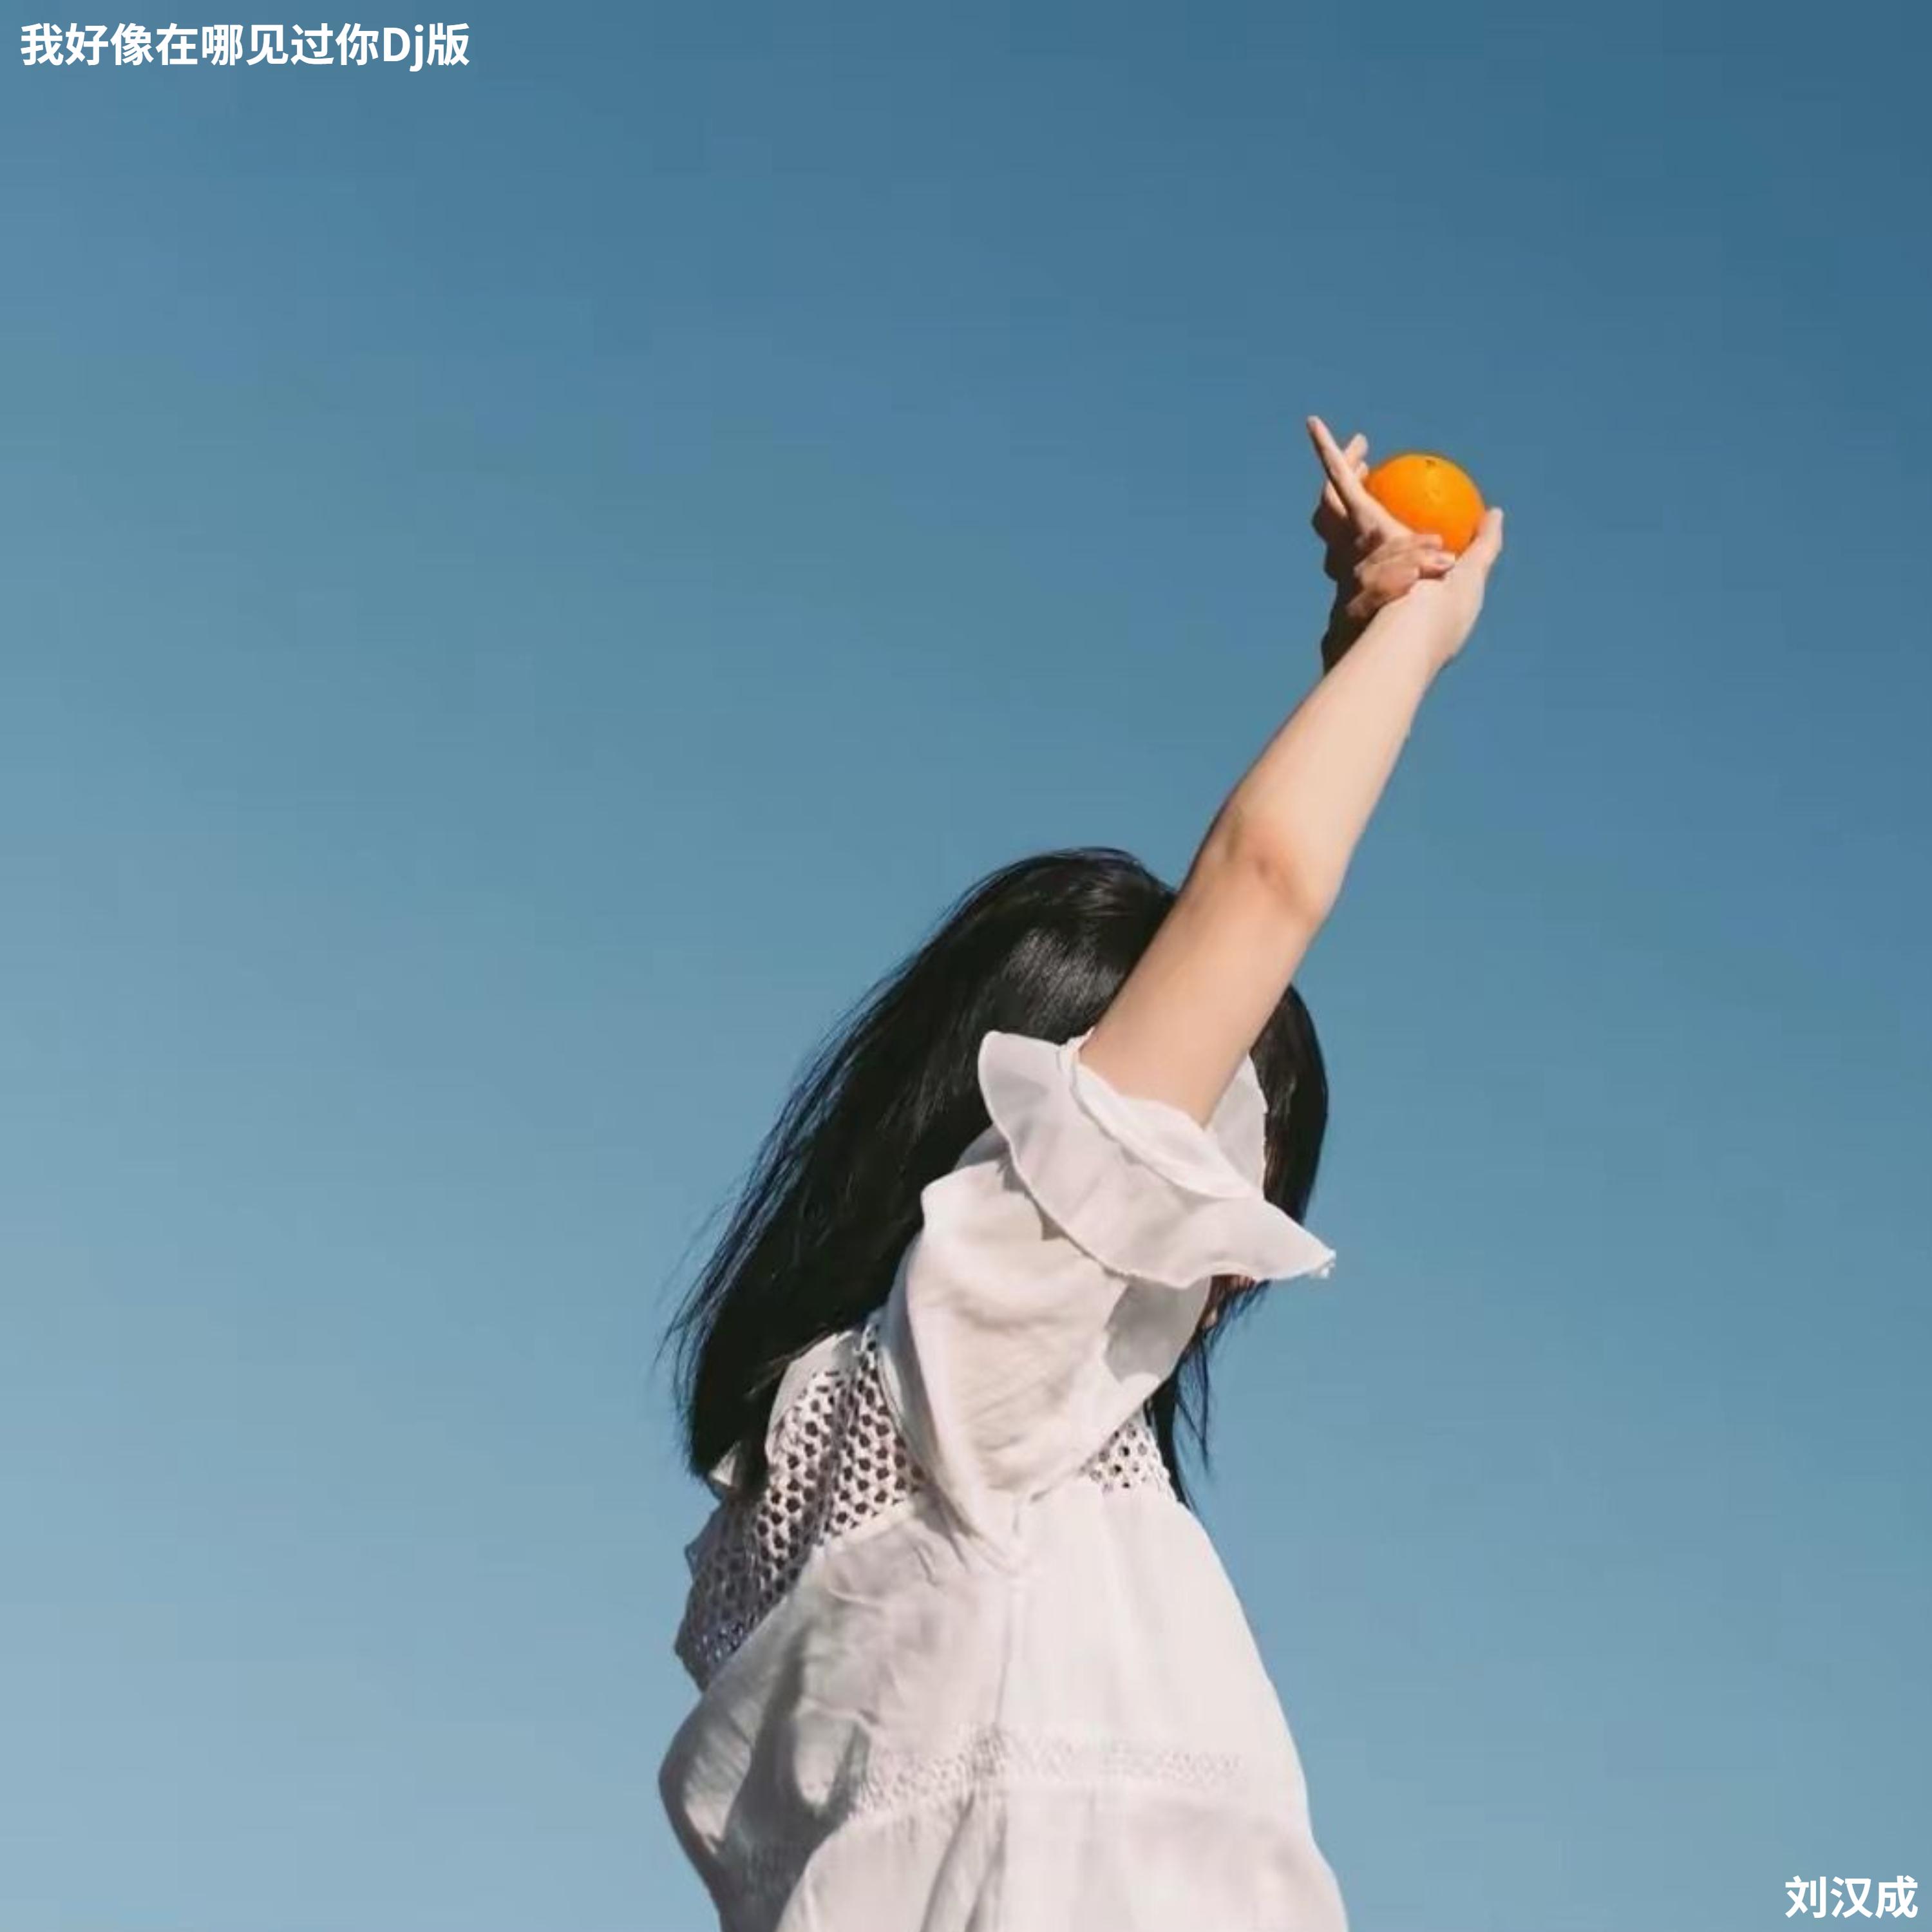 刘汉成 - 当海阔天空遇上鲸落(Dj版)